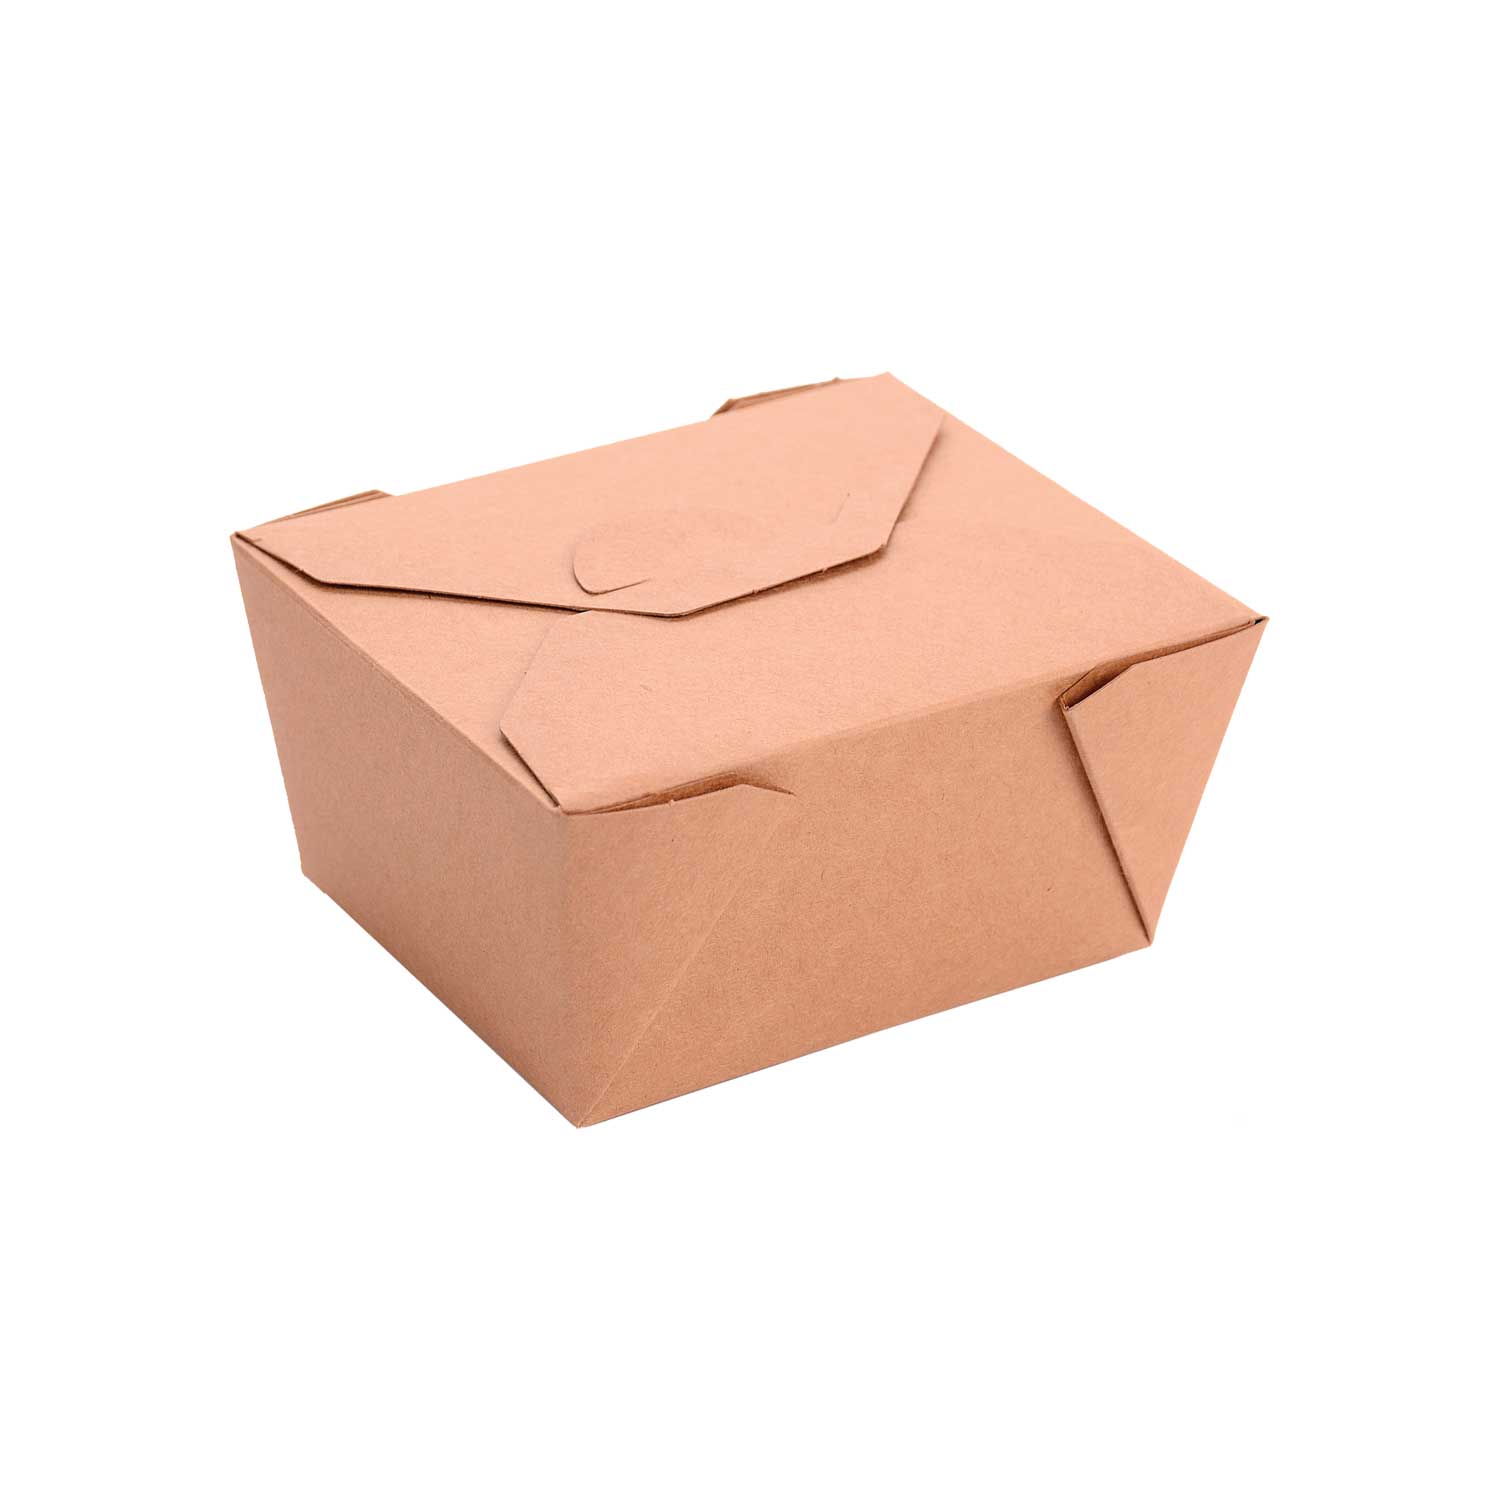 Foldable takeaway box. 28 oz (50)